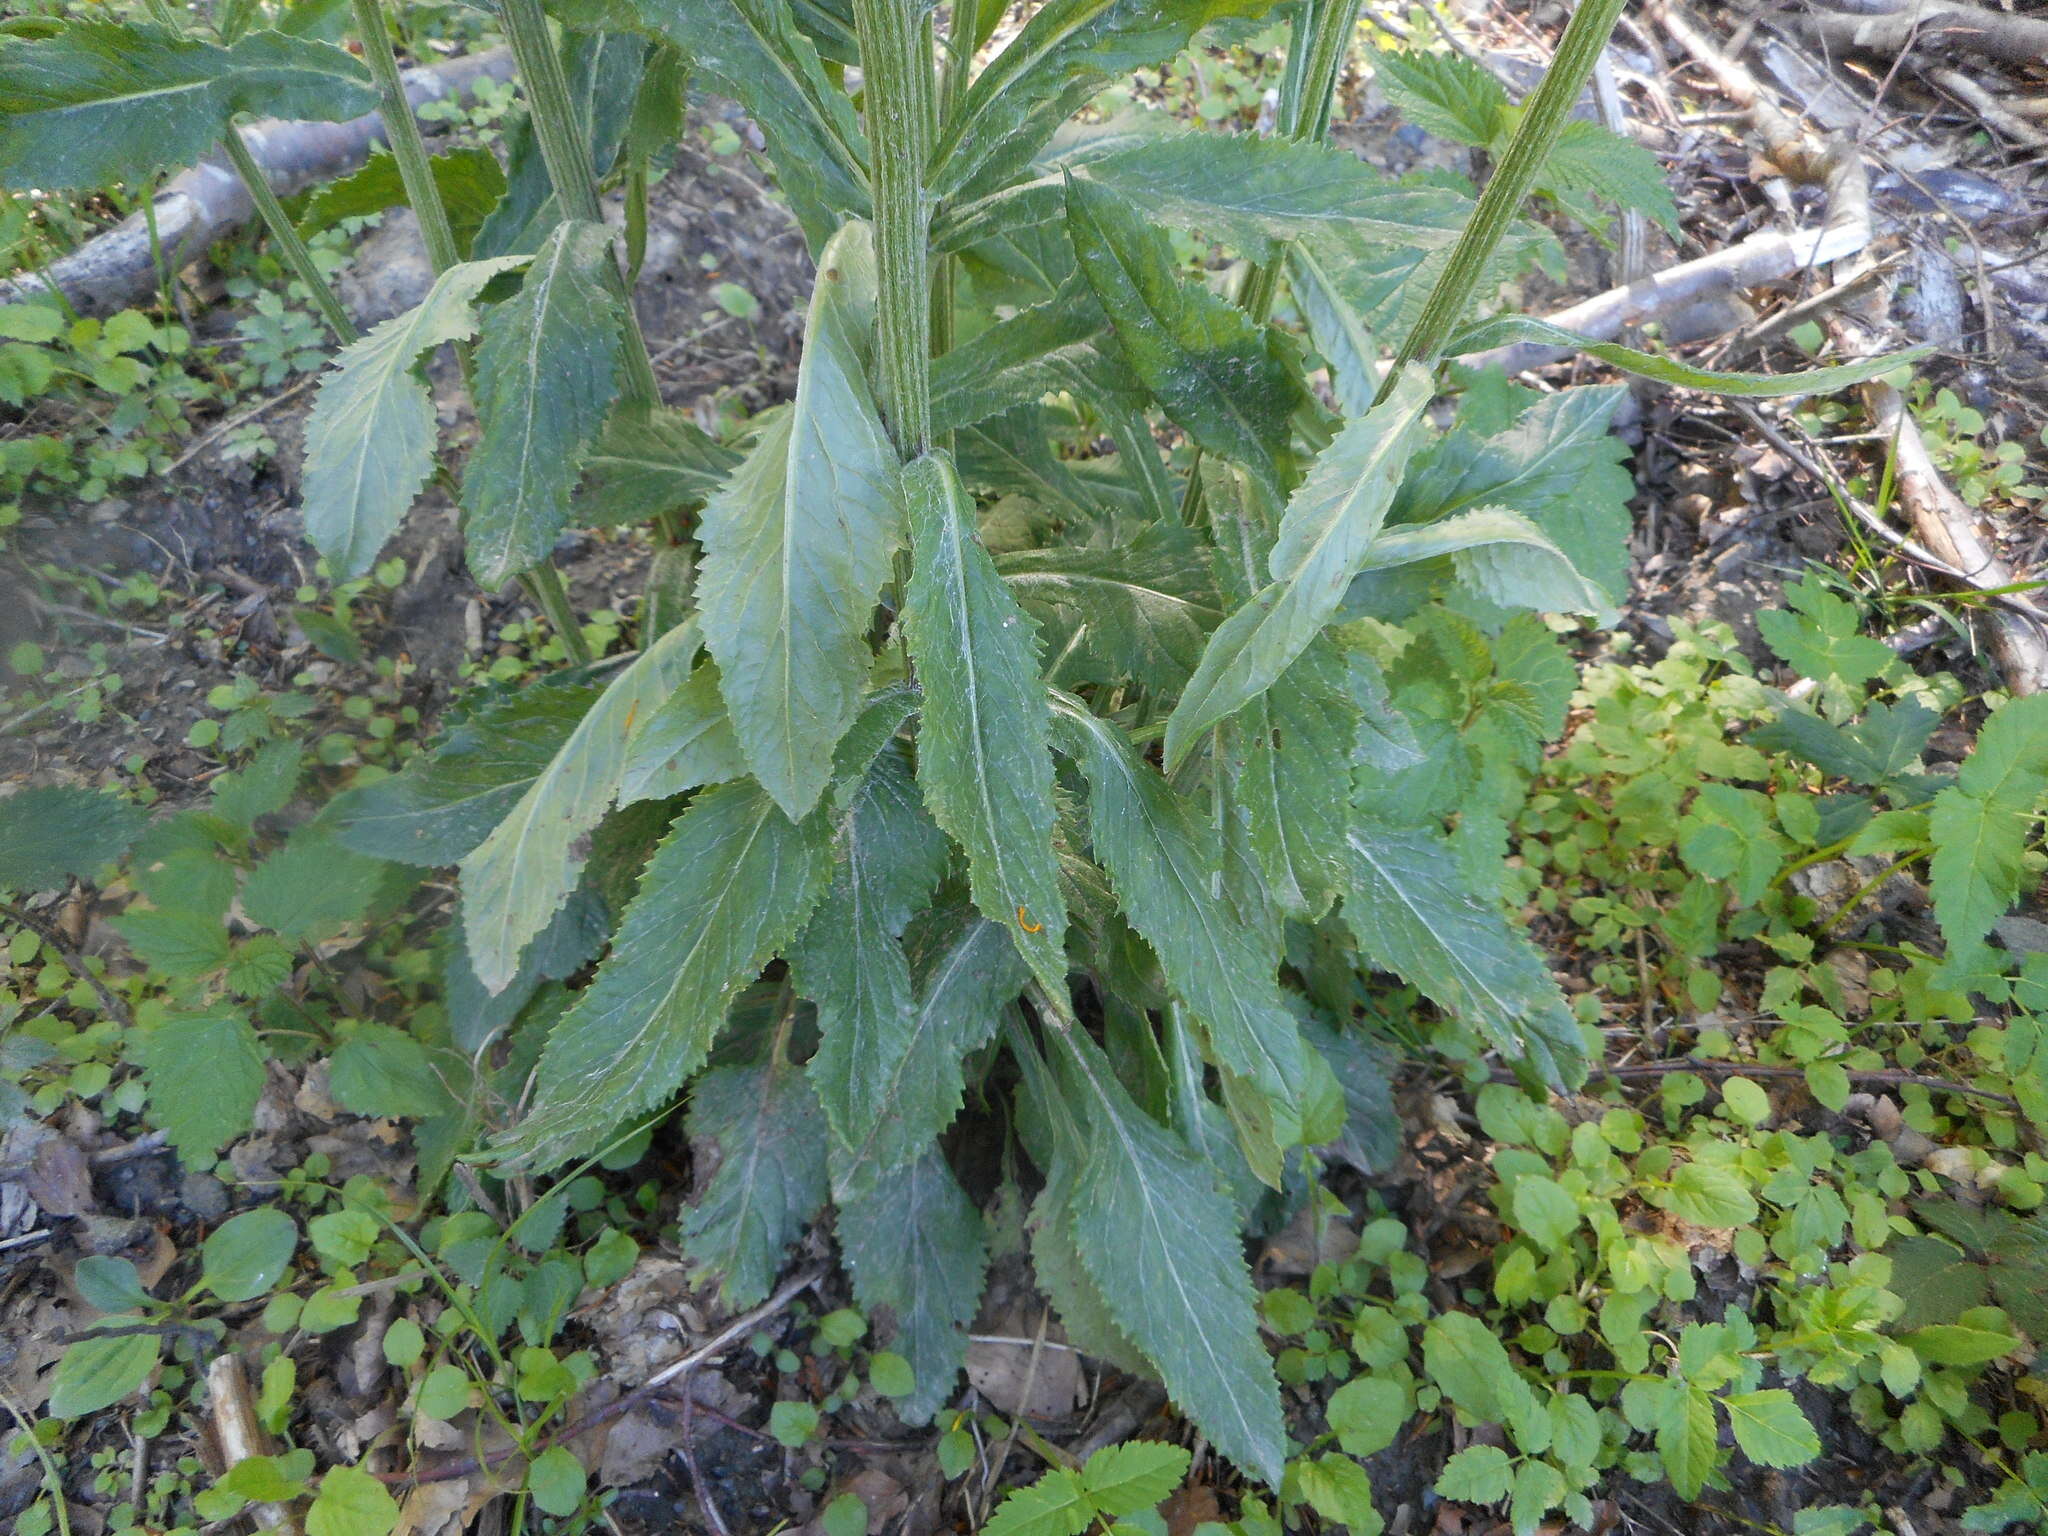 Image of Tephroseris longifolia subsp. brachychaeta Greuter